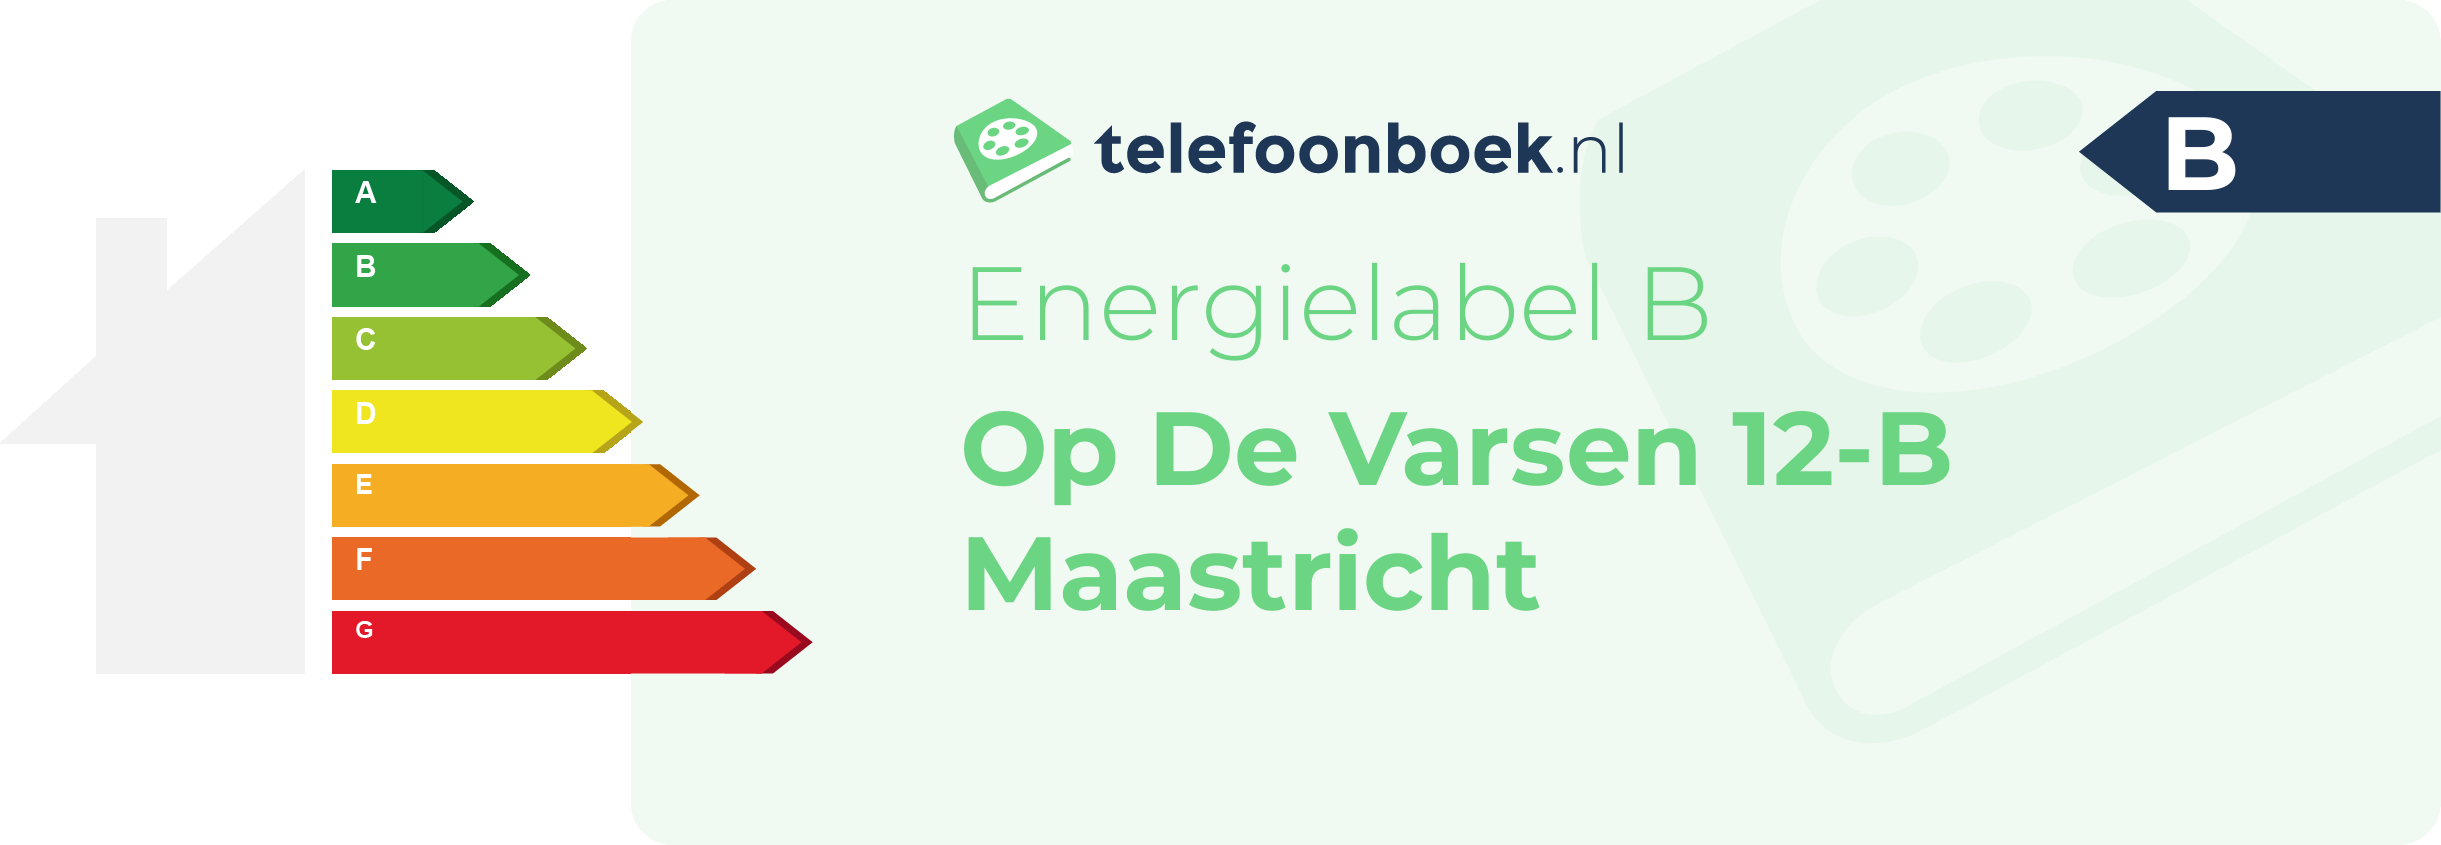 Energielabel Op De Varsen 12-B Maastricht